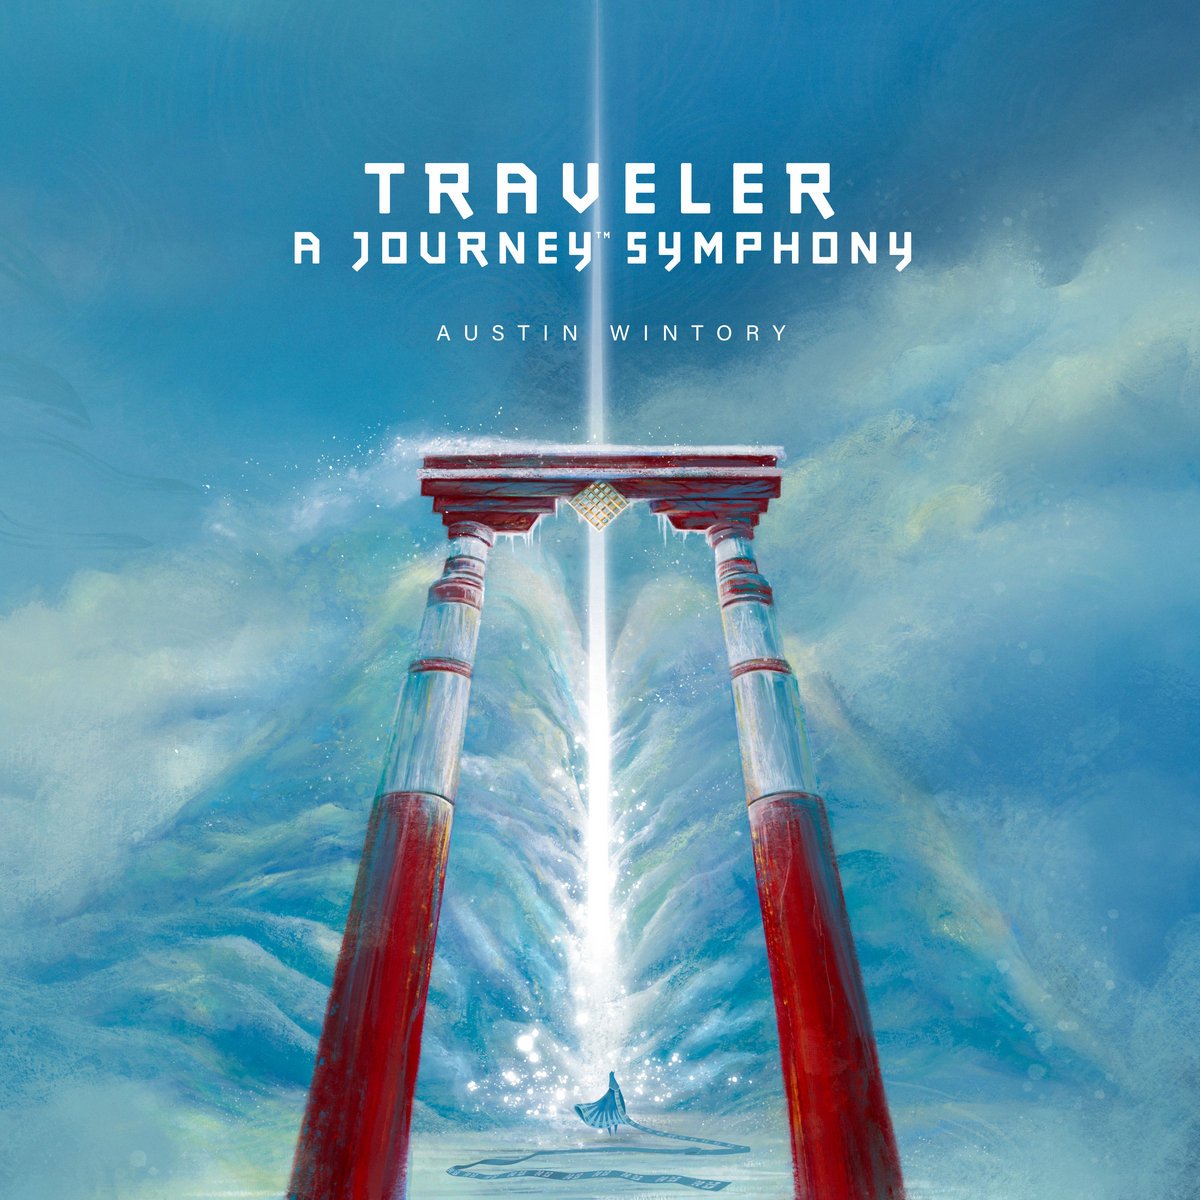 traveler journey symphony austin wintory.jpg